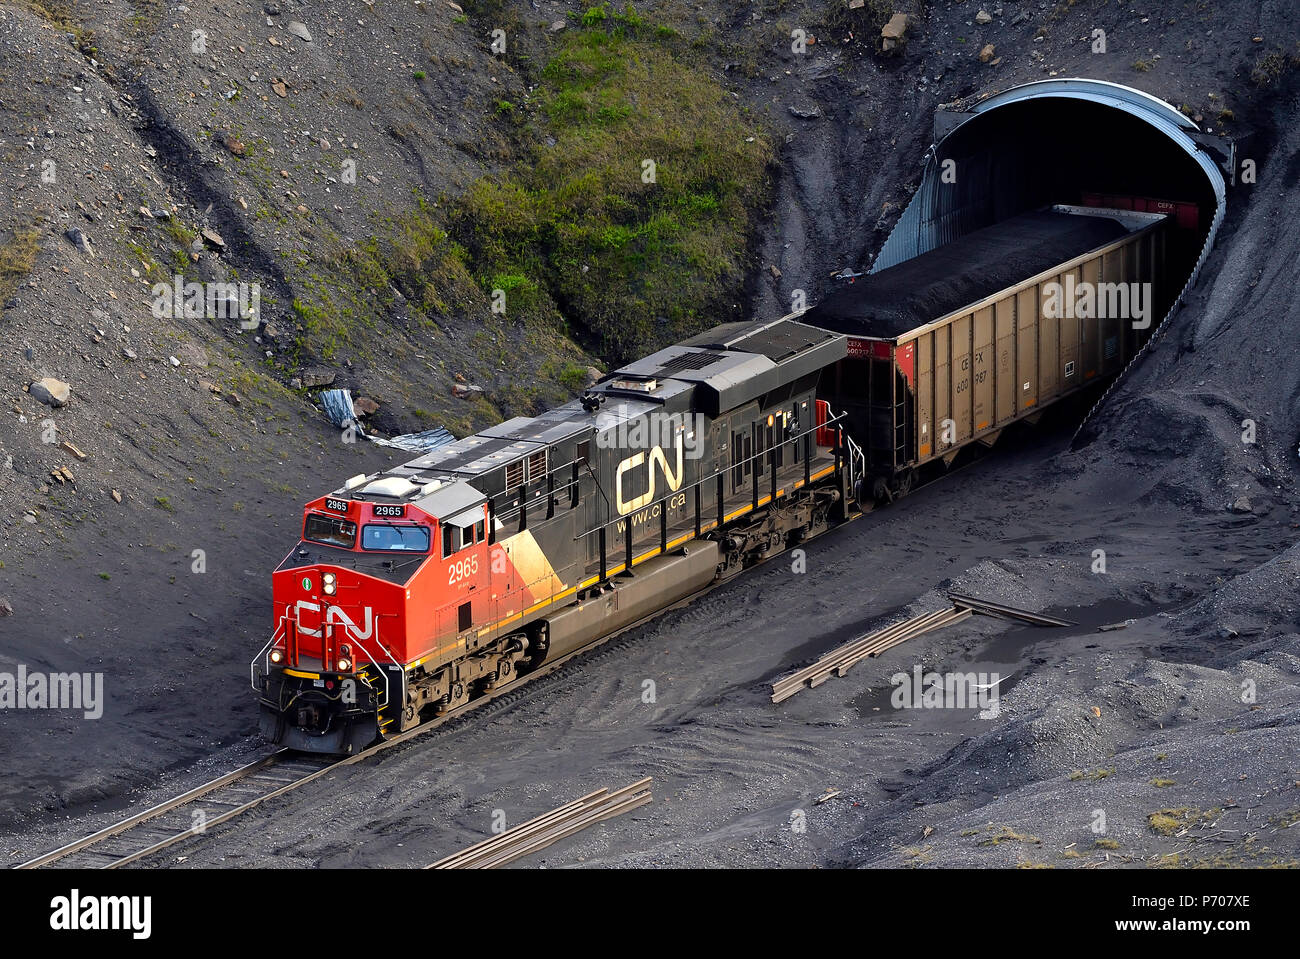 Eine kanadische Nationale Güterzug ziehen oben offenen Waggons mit Kohle durch einen Tunnel in der Nähe von Cadomin Alberta Kanada geladen. Stockfoto